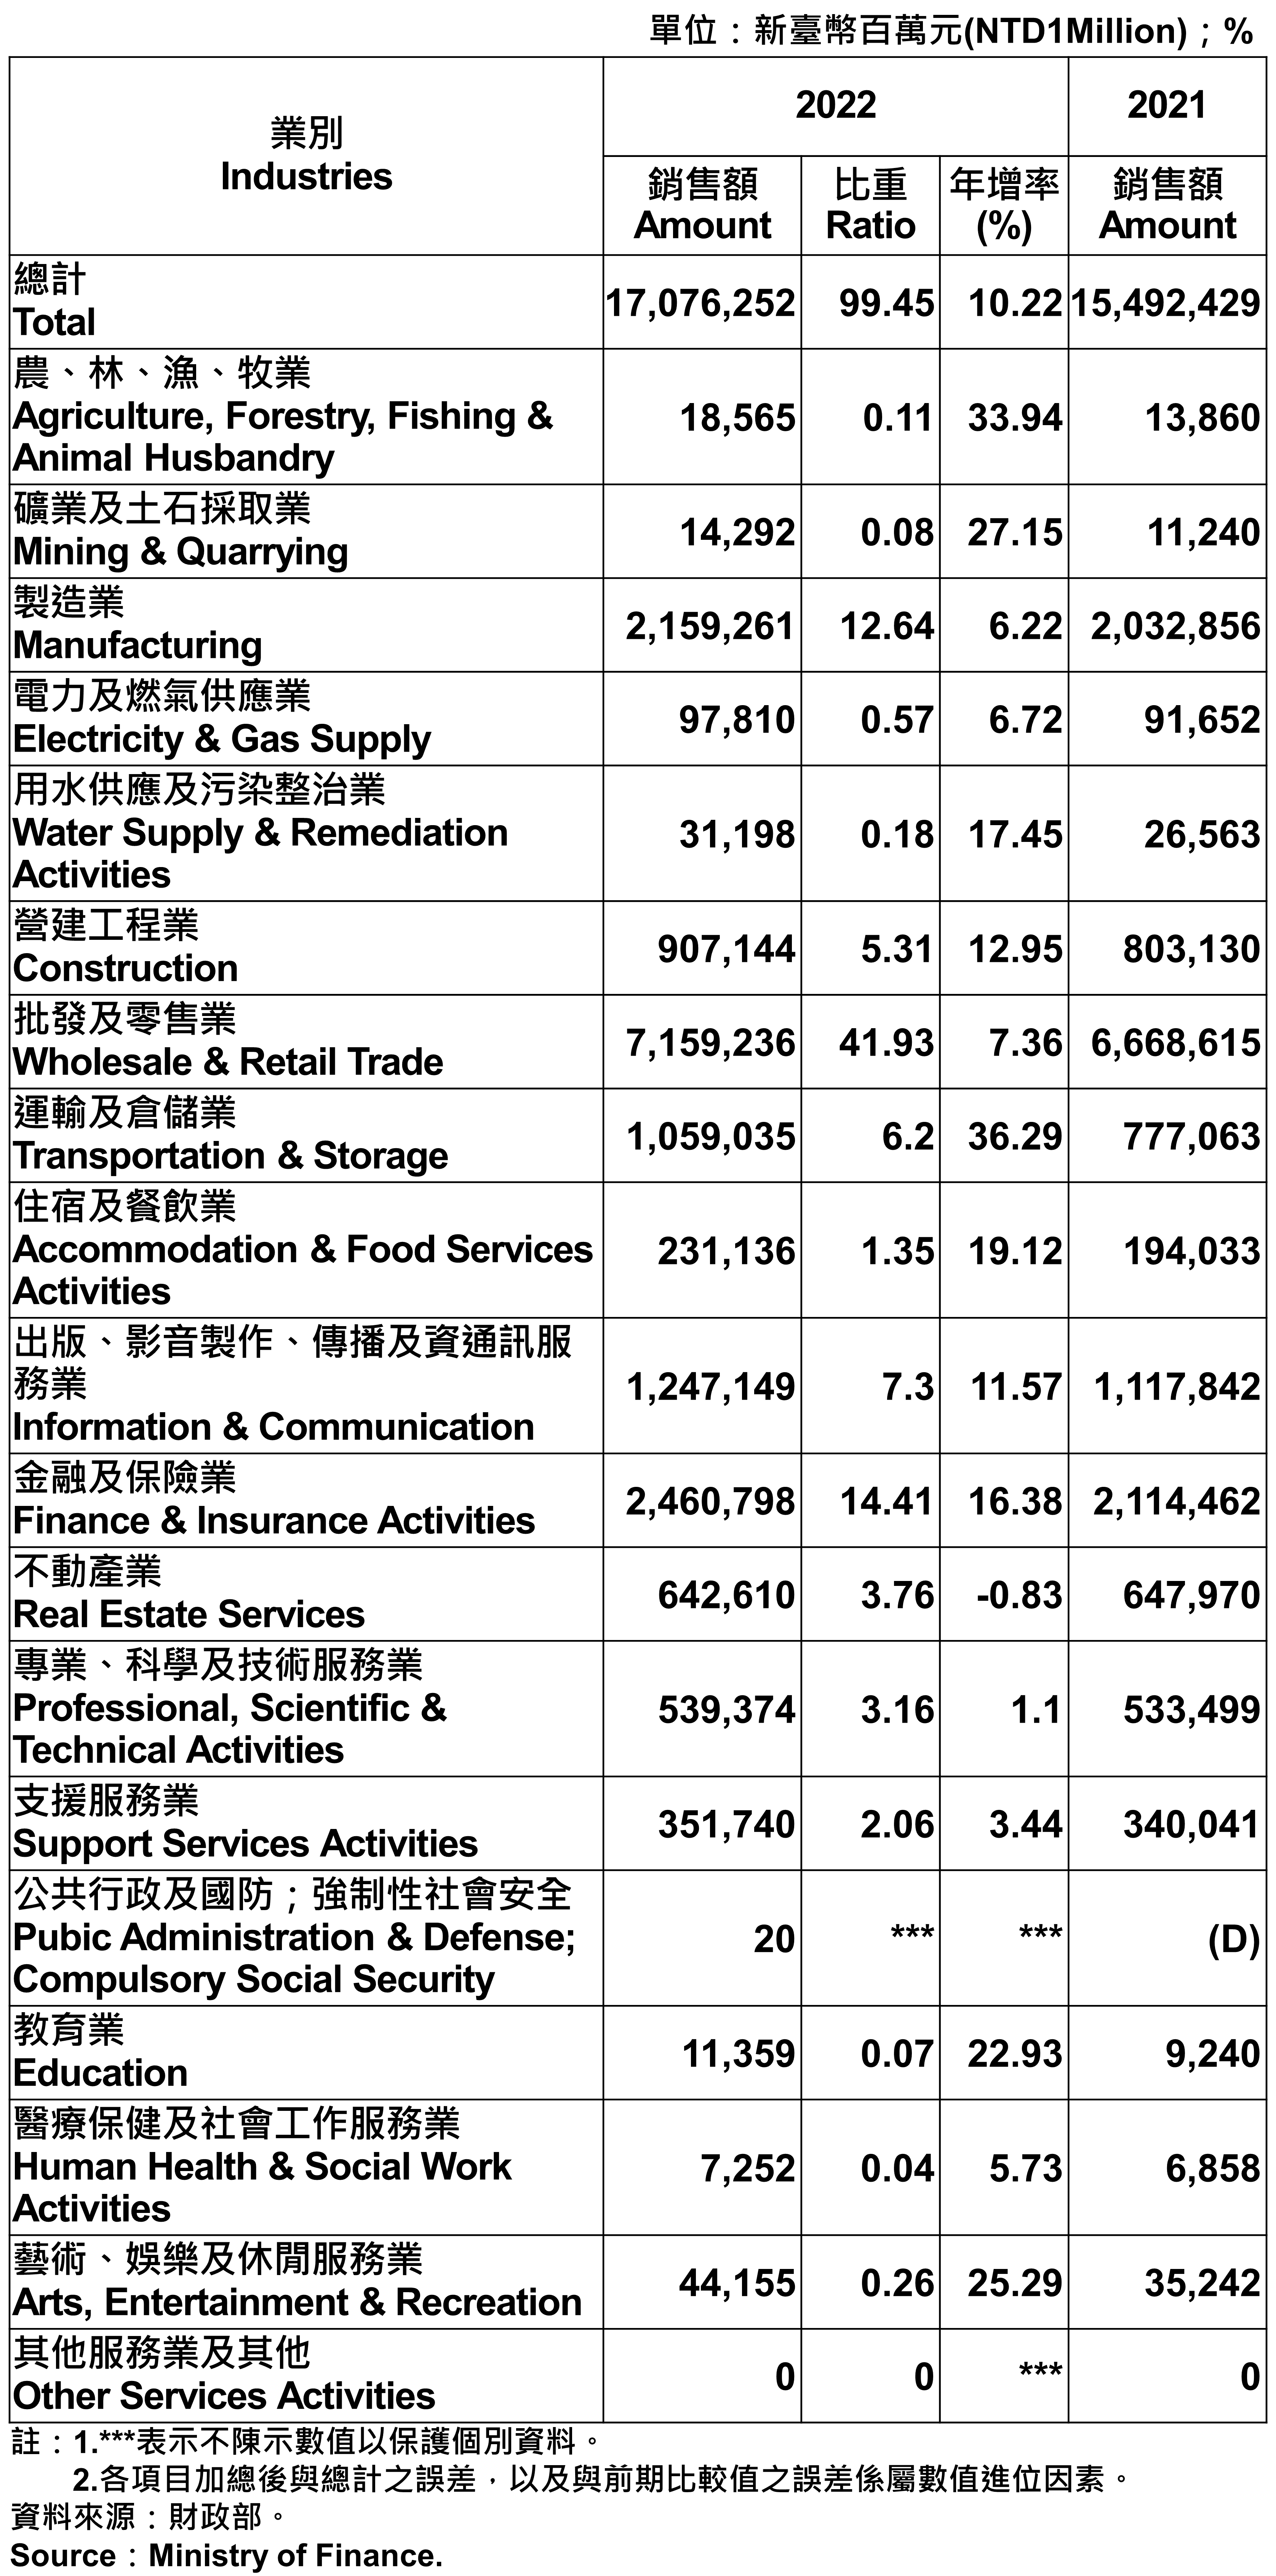 臺北市各產業公司行號銷售額—2022 Operating Income for Business Enterprises in Taipei City—2022